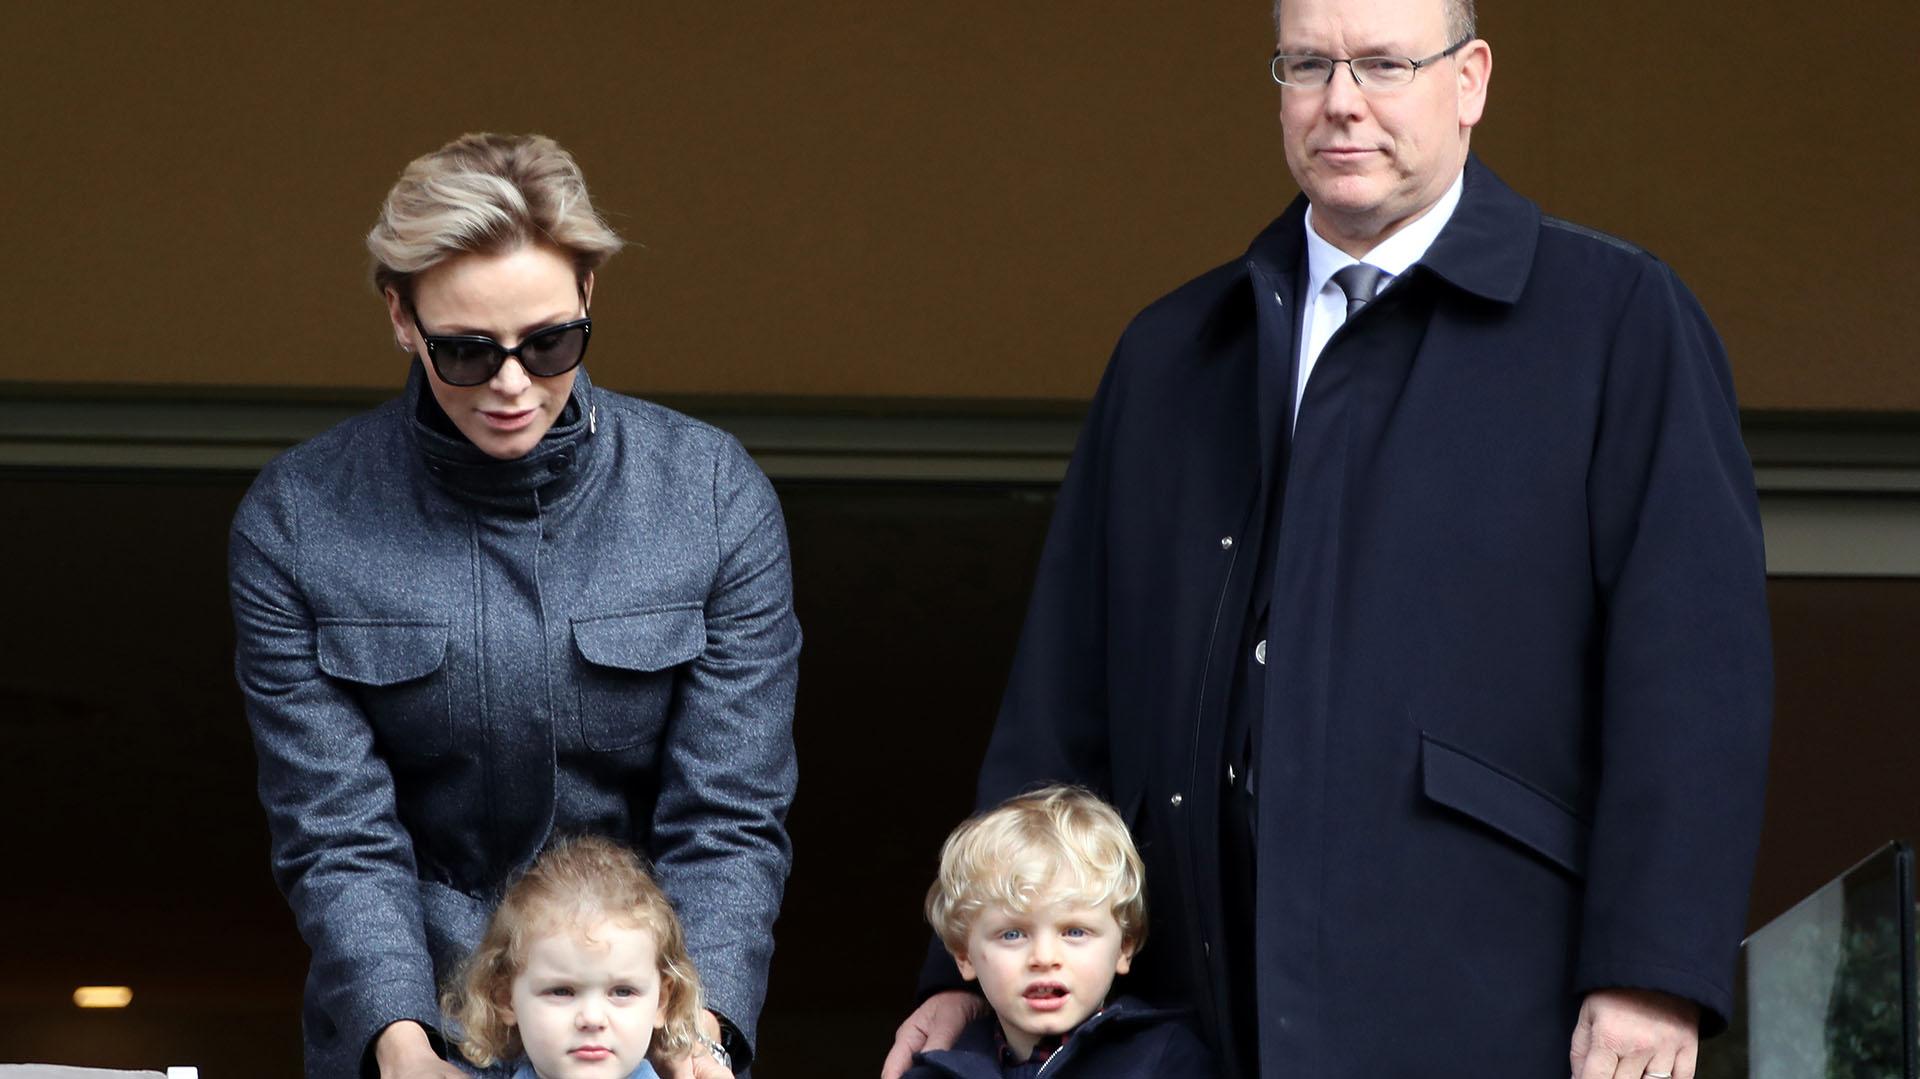 La familia real de Mónaco han estado separados por meses (Foto: AFP)